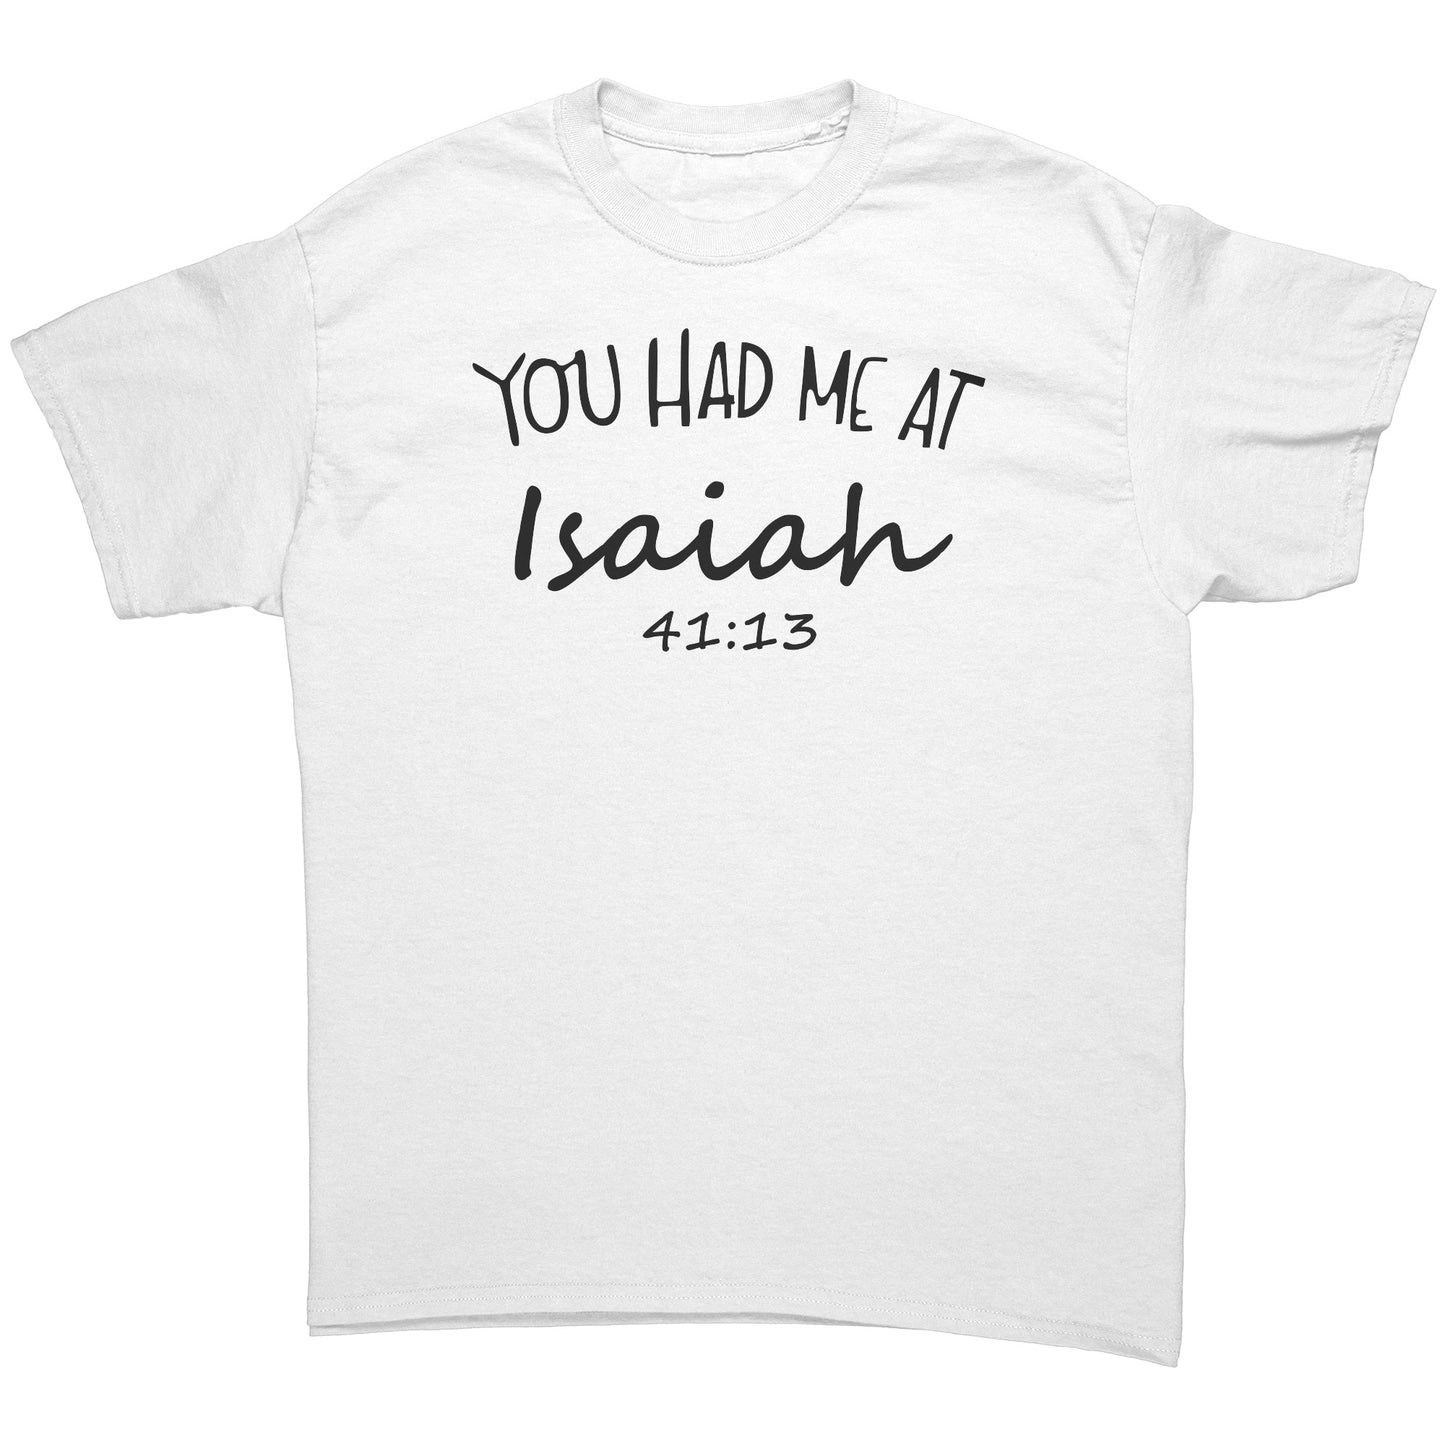 You Had Me At Isaiah 41:13 Men's T-Shirt Part 1